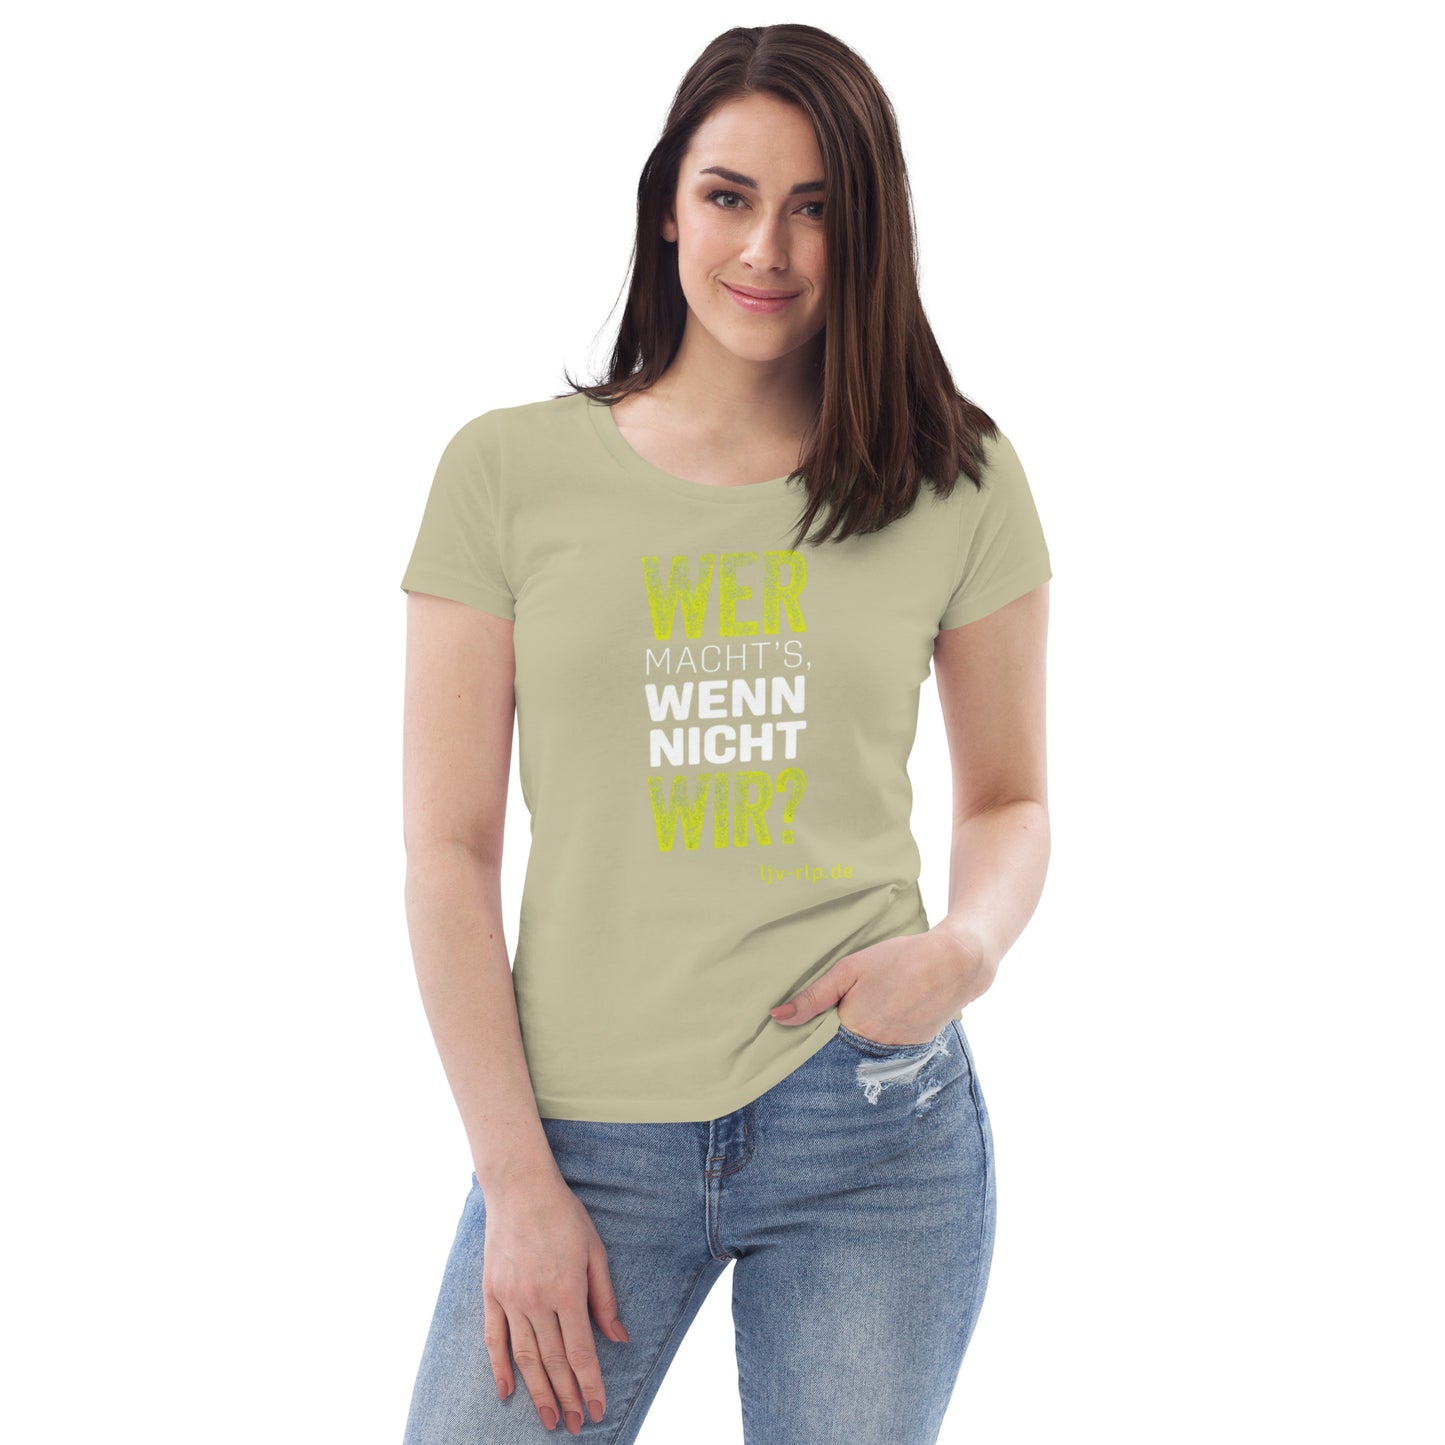 T-Shirt "Wer macht's wenn nicht wir?" (Slimfit)